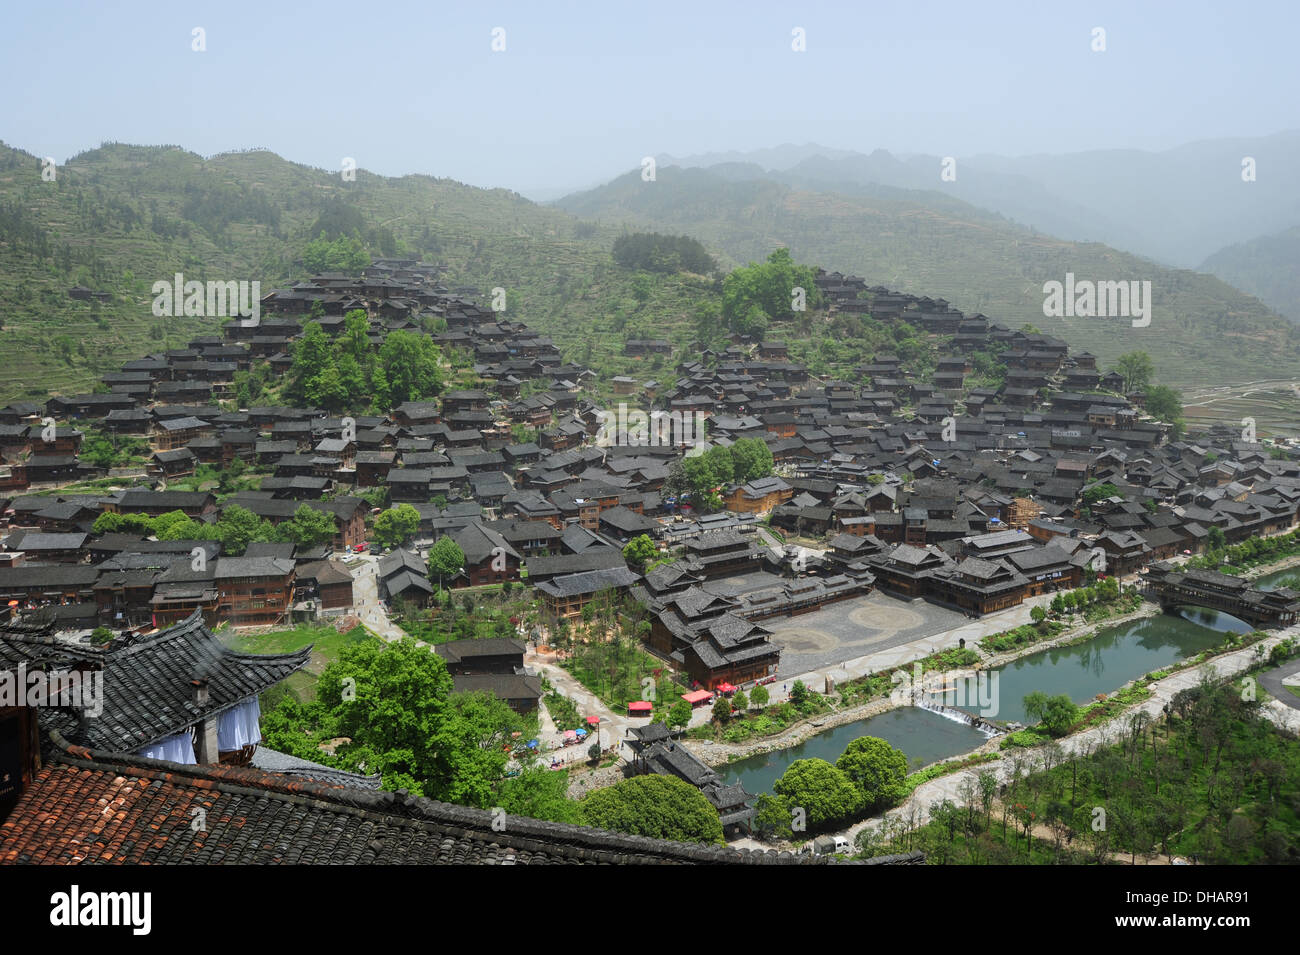 Il Miao minoranza etnica della Cina, ha costruito la loro residenza sul pendio di una collina, con tetto nero e pareti marrone. Foto Stock